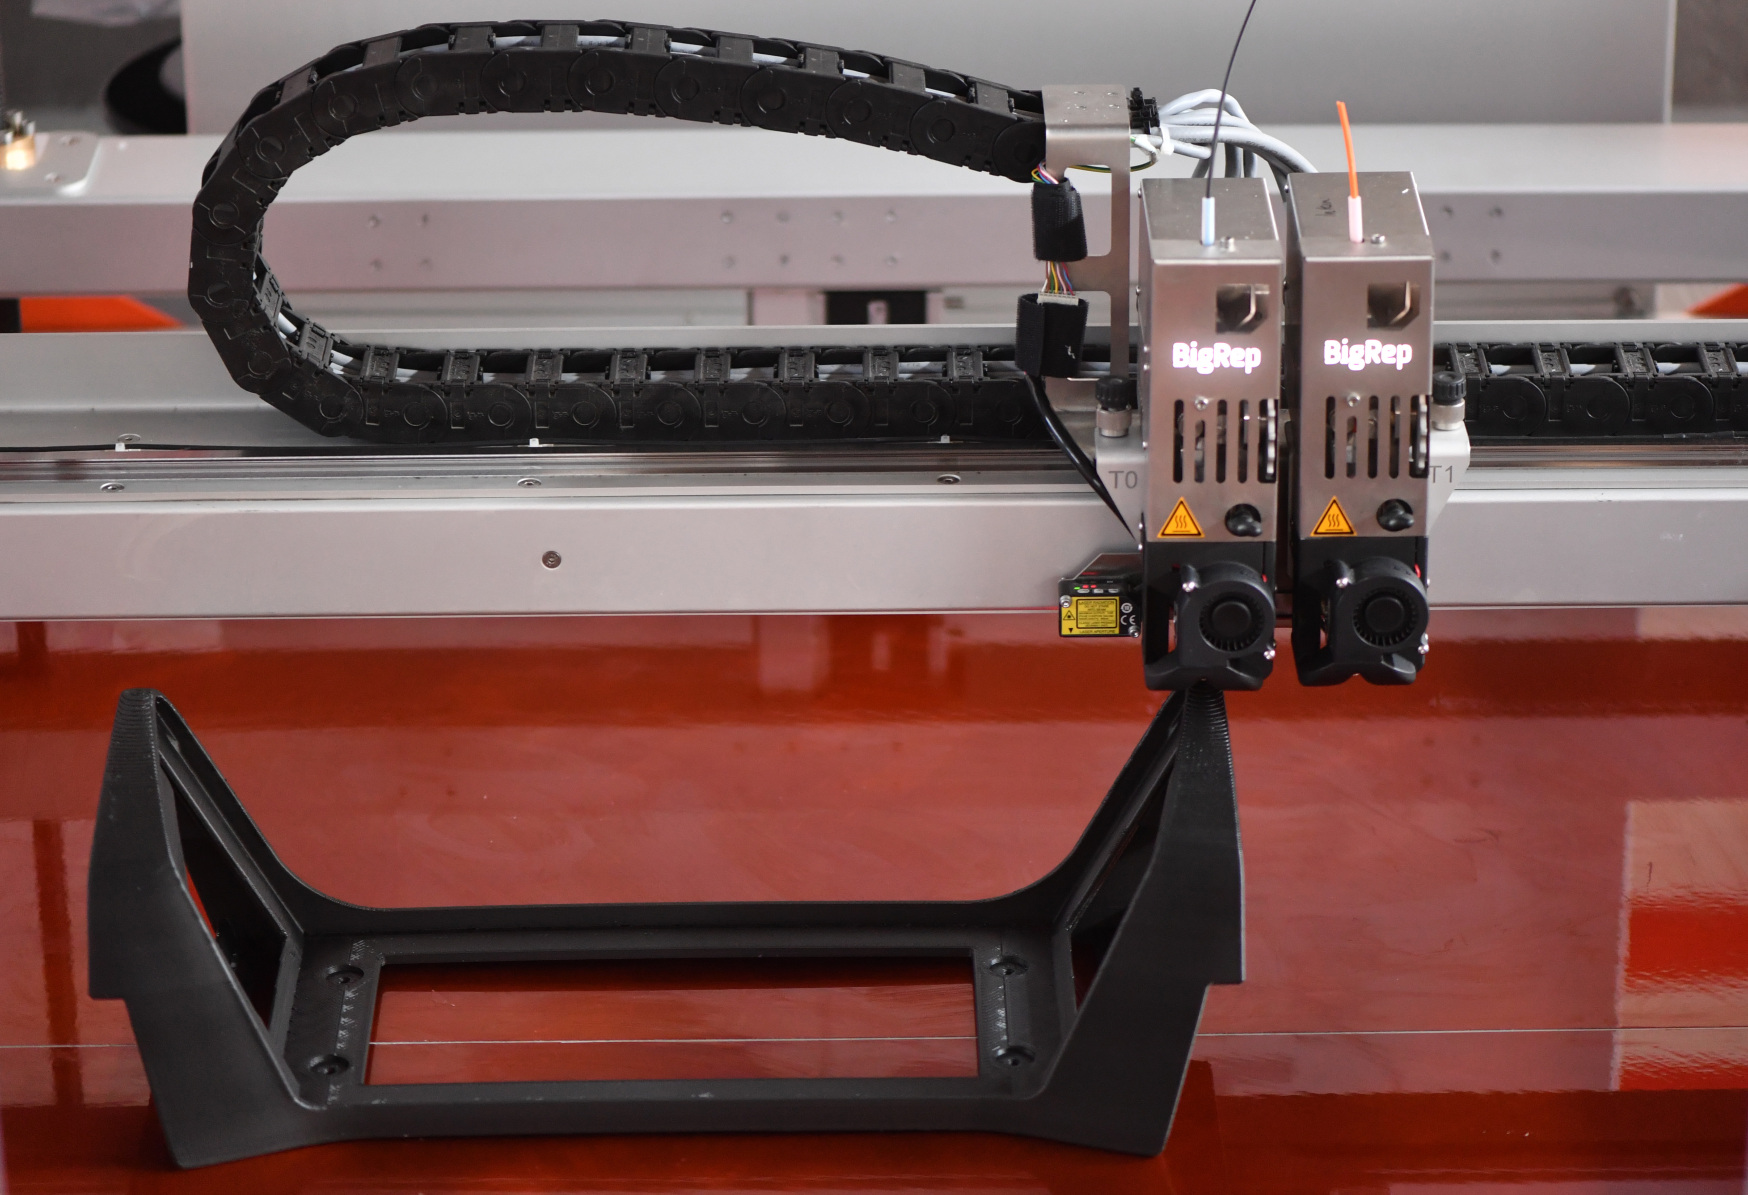 Deutsche Bahn is increasing its use of 3D printing